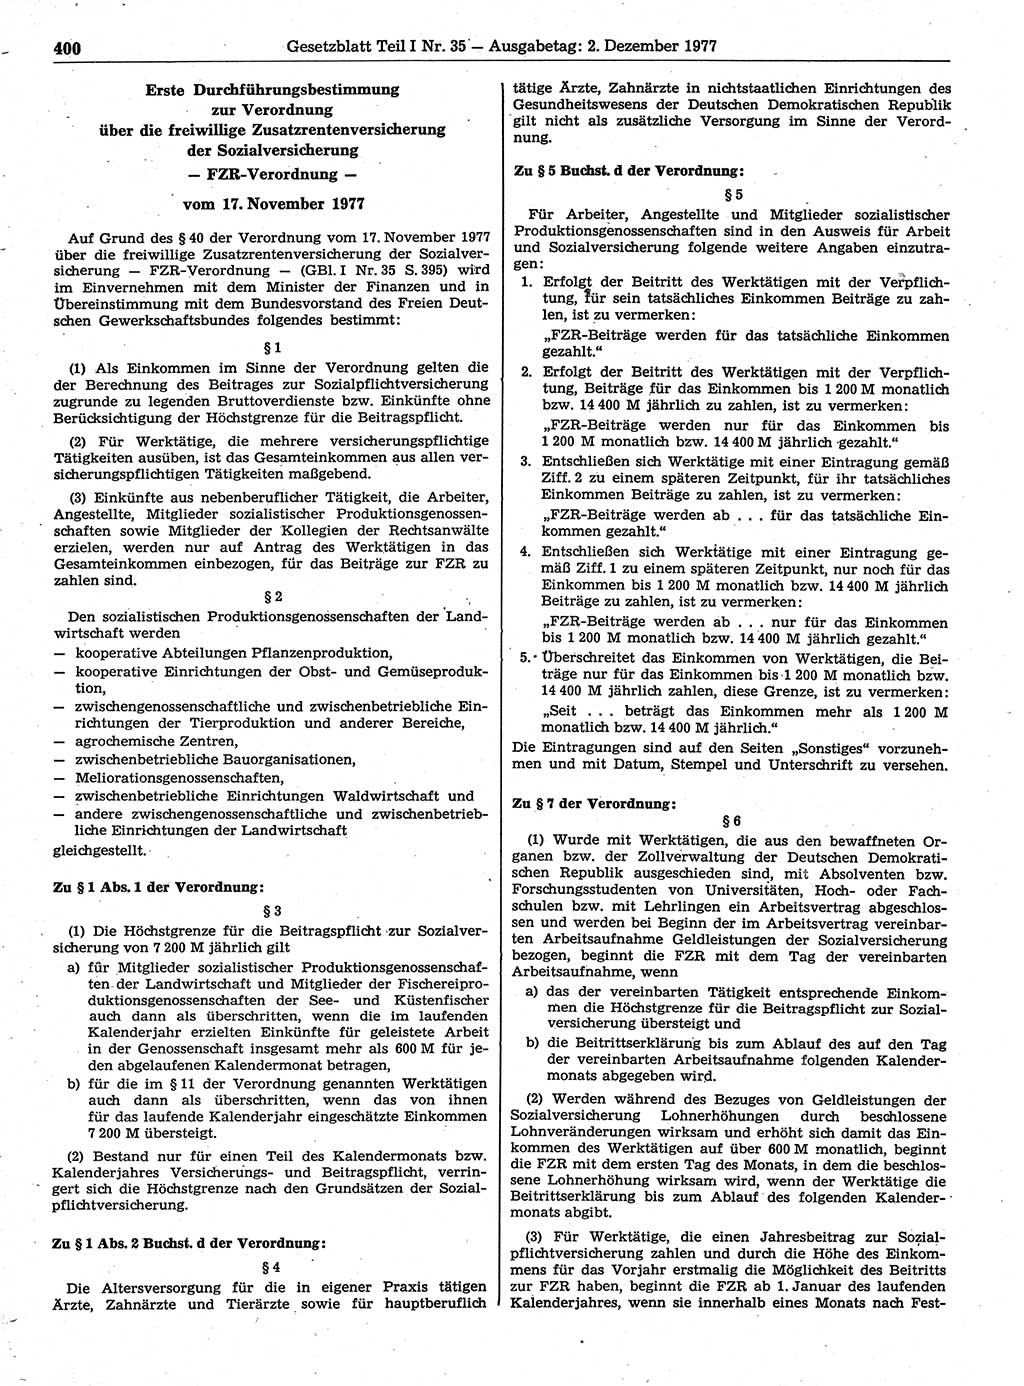 Gesetzblatt (GBl.) der Deutschen Demokratischen Republik (DDR) Teil Ⅰ 1977, Seite 400 (GBl. DDR Ⅰ 1977, S. 400)